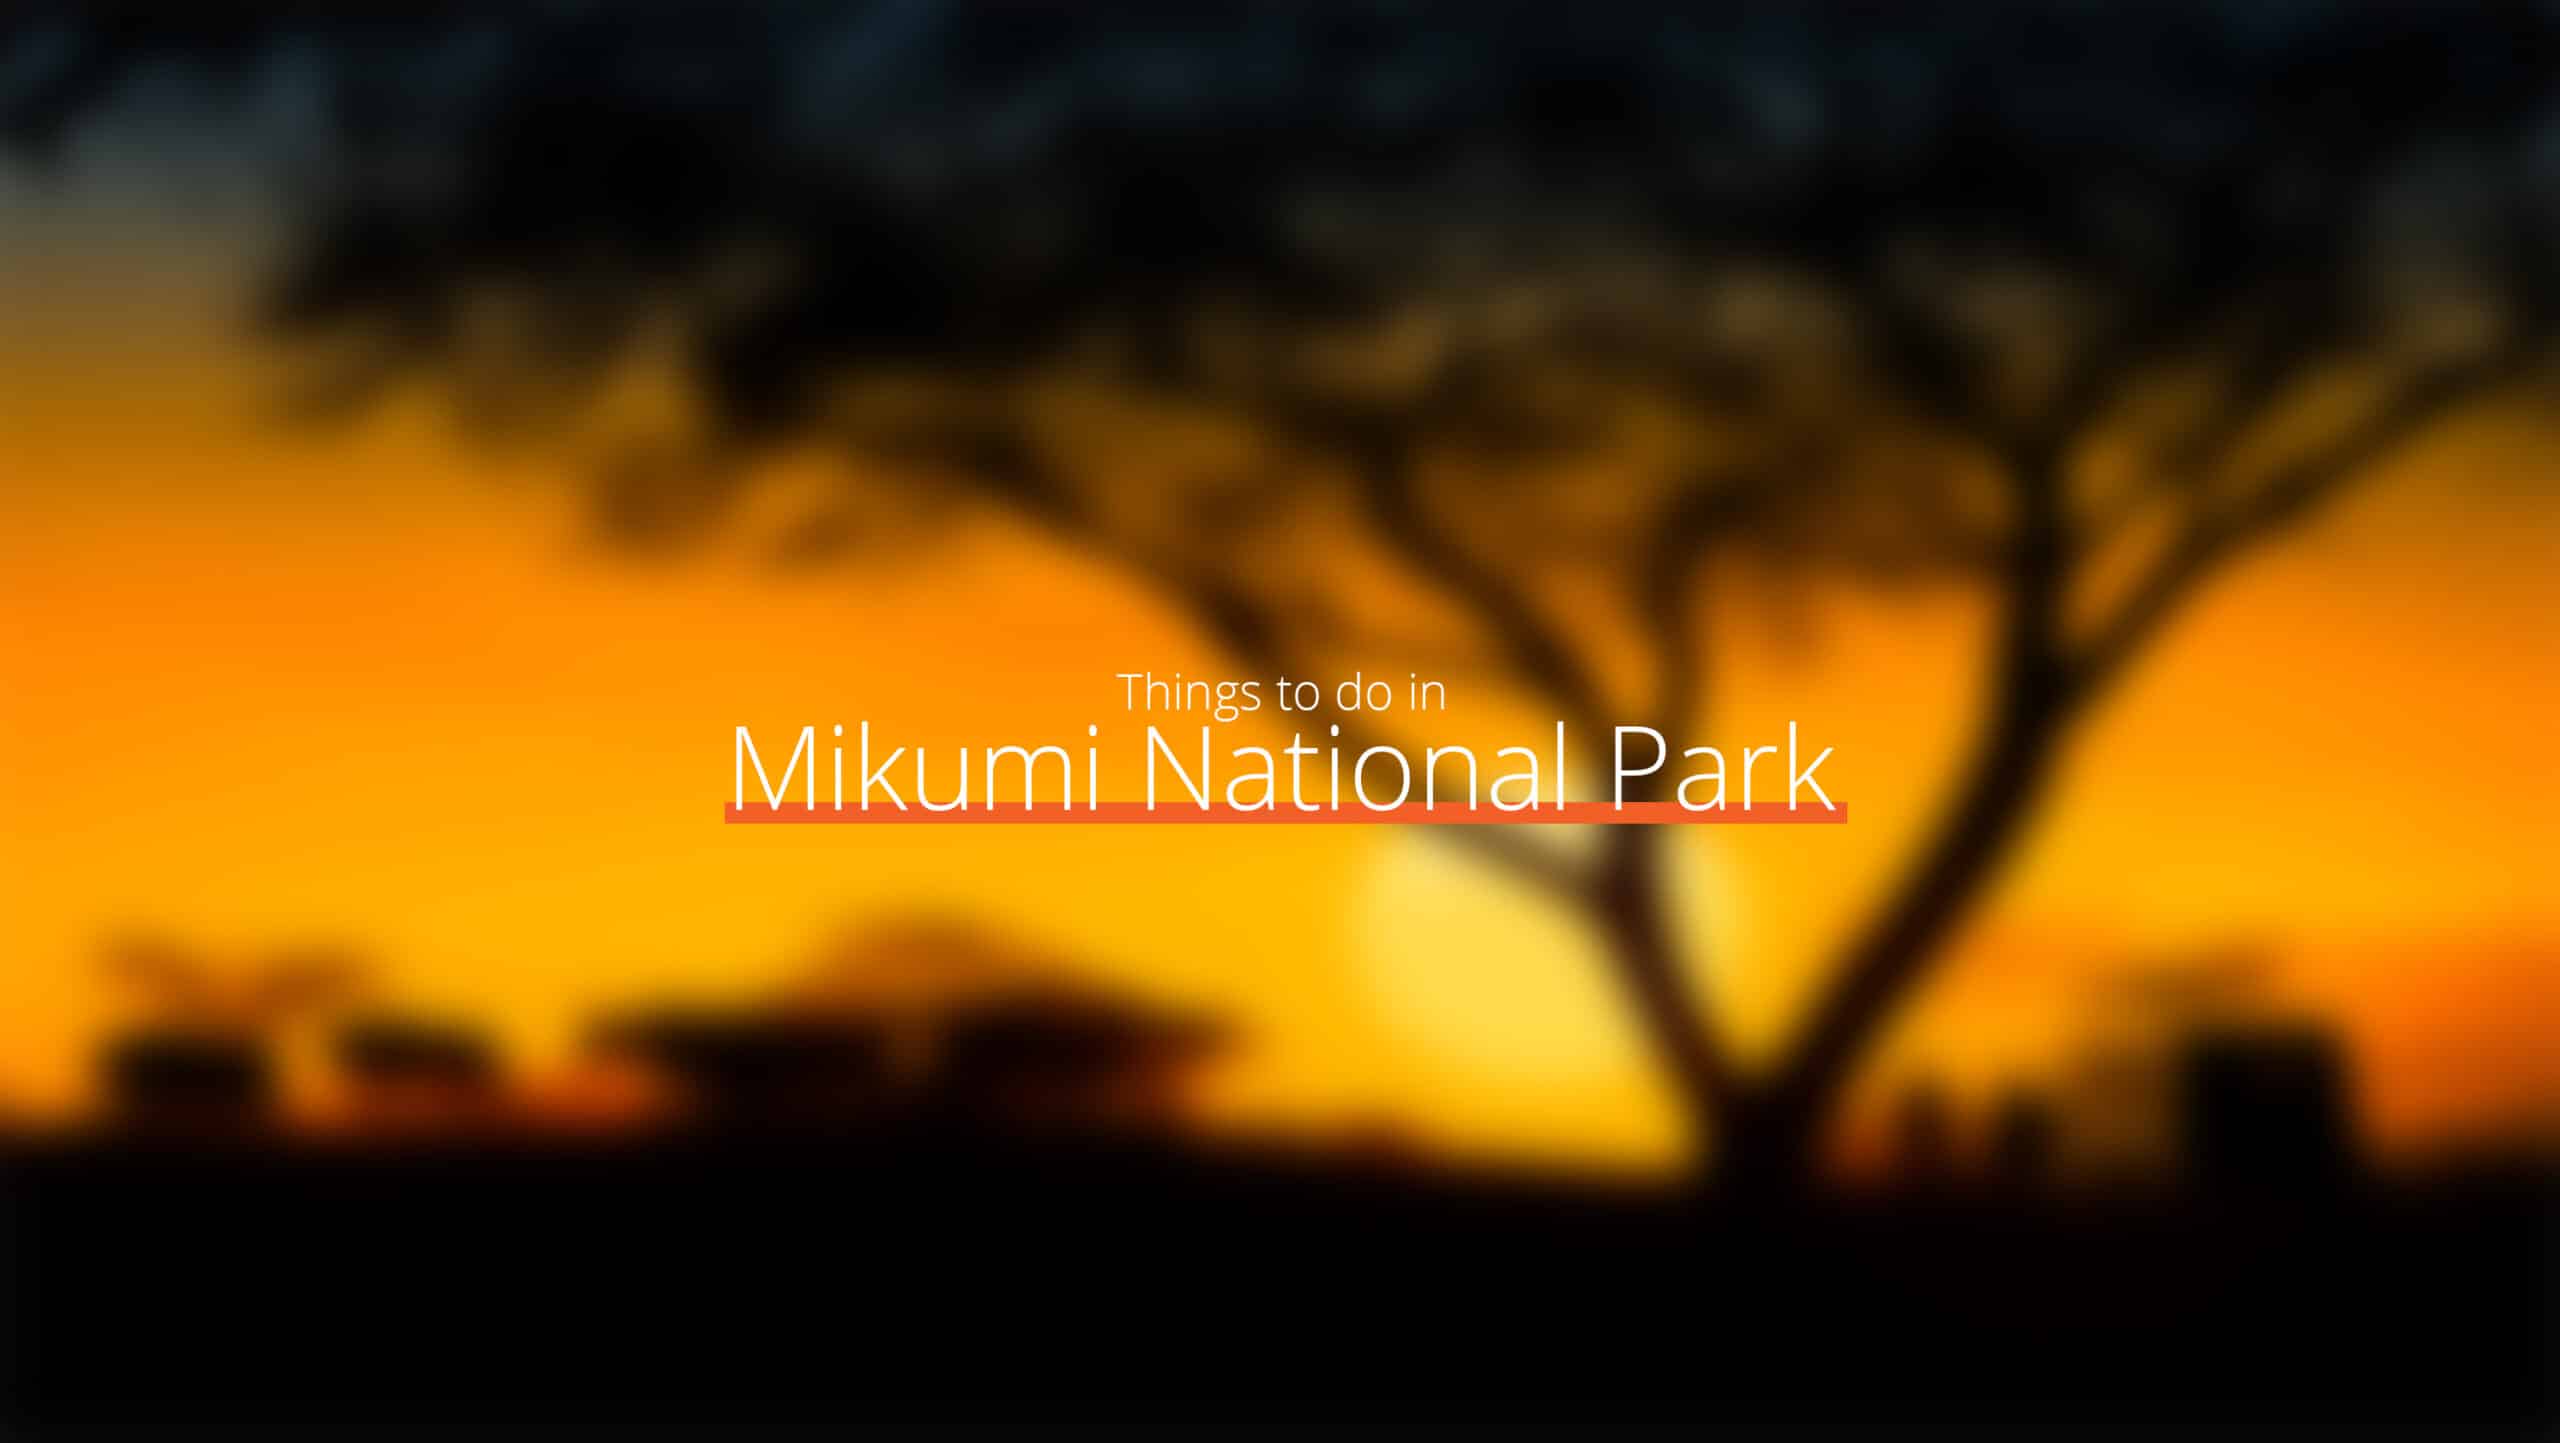 Tanzania - parque nacional de mikumi escala 1 - faq - preguntas frecuentes sobre tanzania